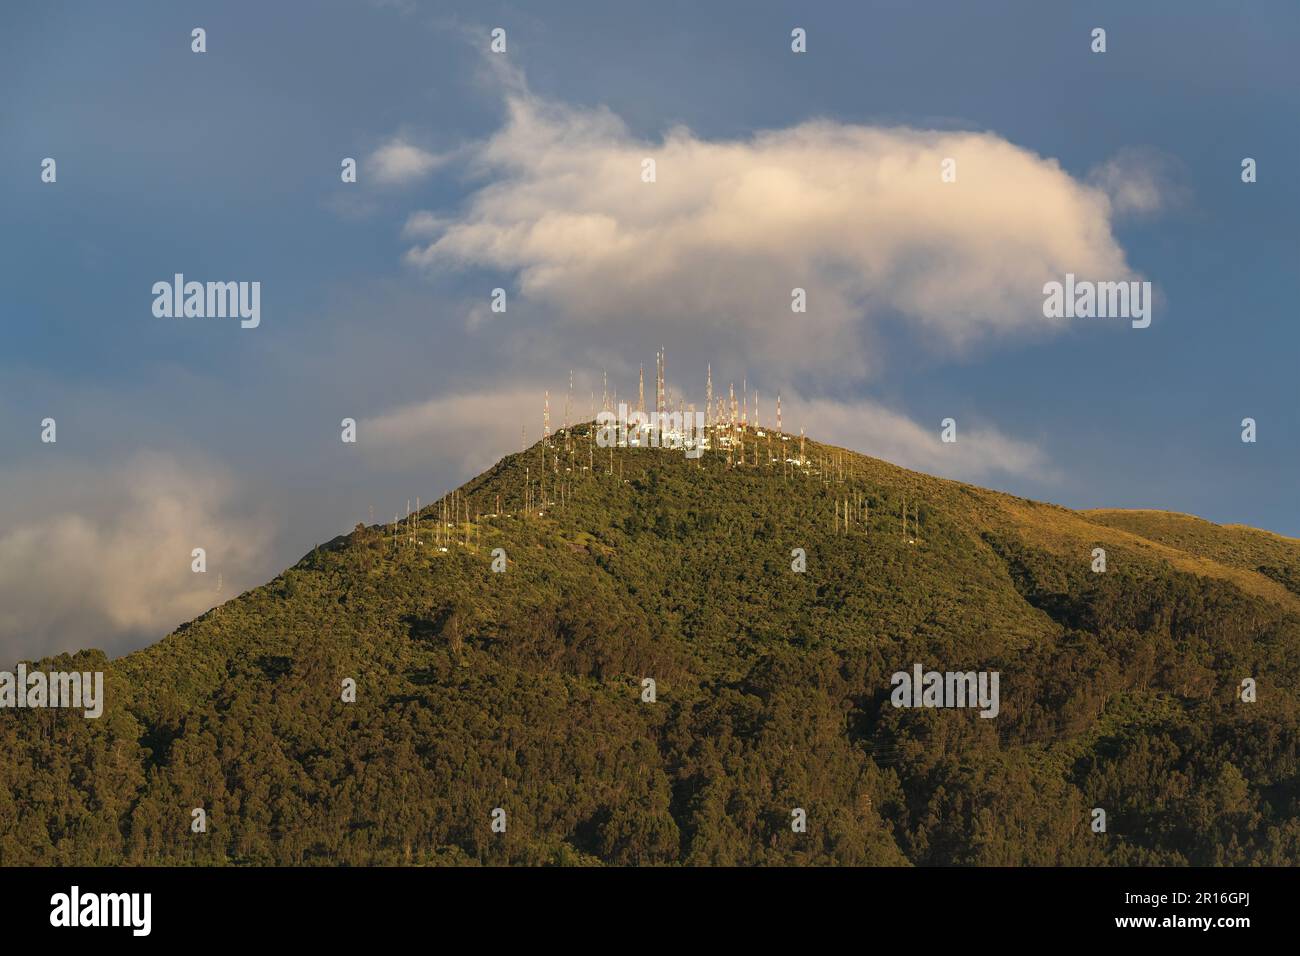 Pic de l'antenne au lever du soleil, volcan Pichincha, Quito, province de Pichincha, Équateur. Banque D'Images